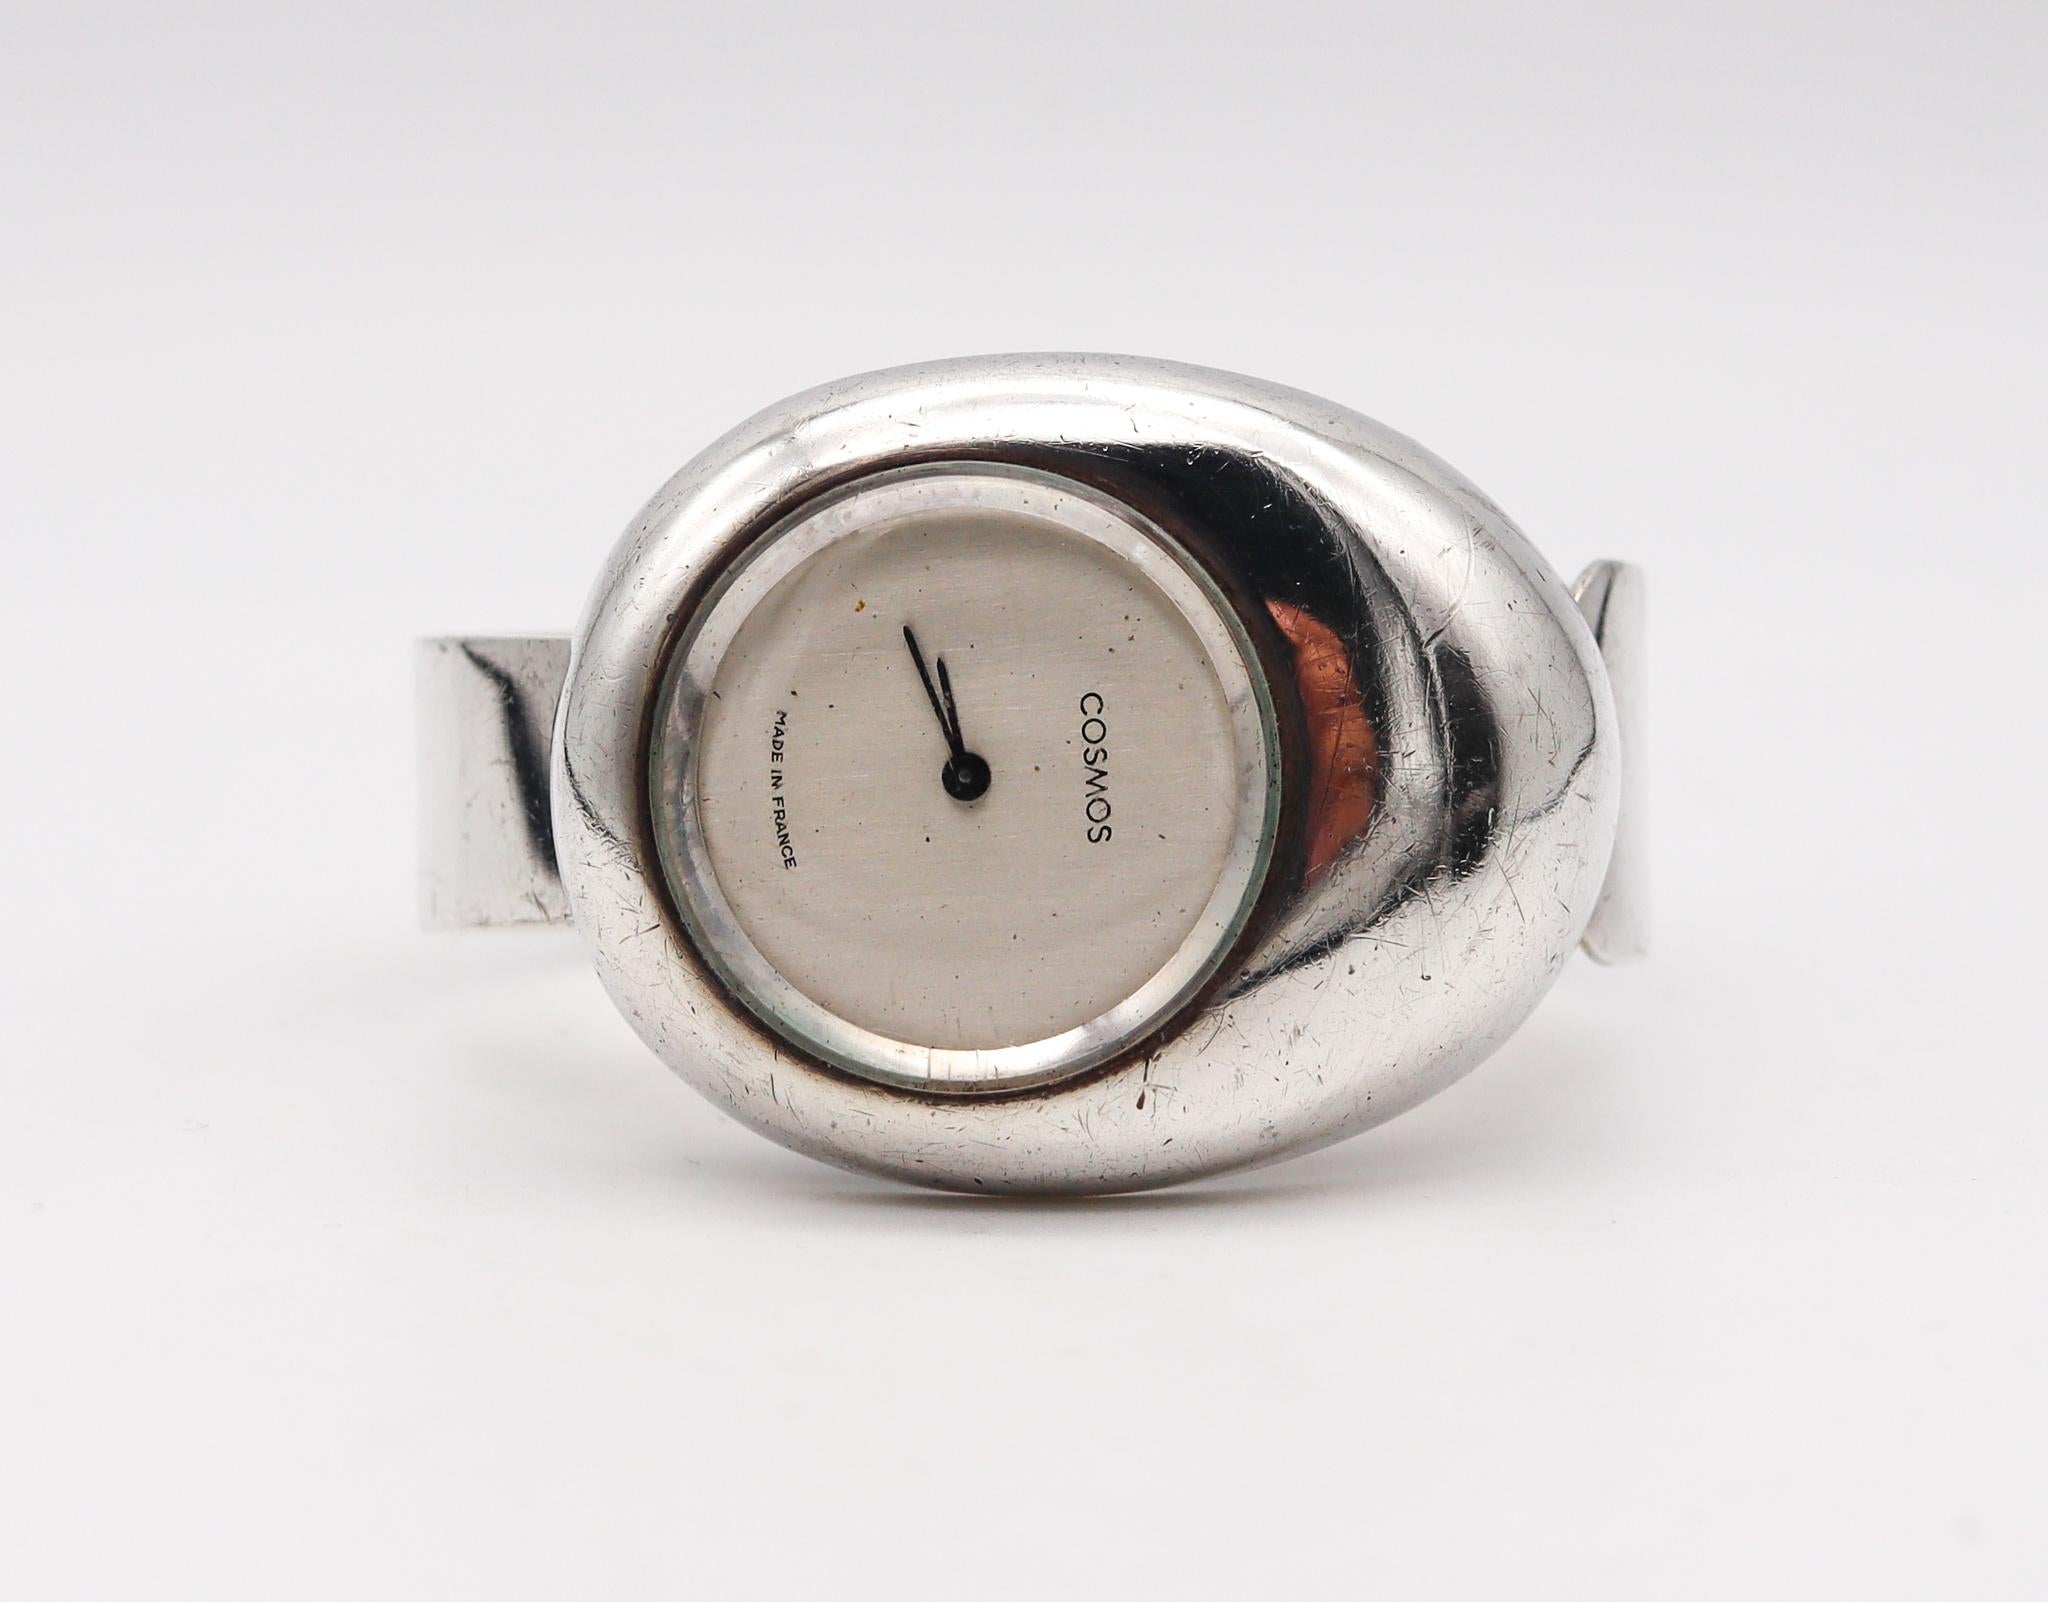 Une manchette de montre-bracelet rétro conçue par Cosmos Paris.

Magnifique montre bracelet manchette vintage, créée à Paris en France par Cosmos, dans les années 1973. Cette pièce rétro sculpturale a été fabriquée avec des motifs de l'ère spatiale